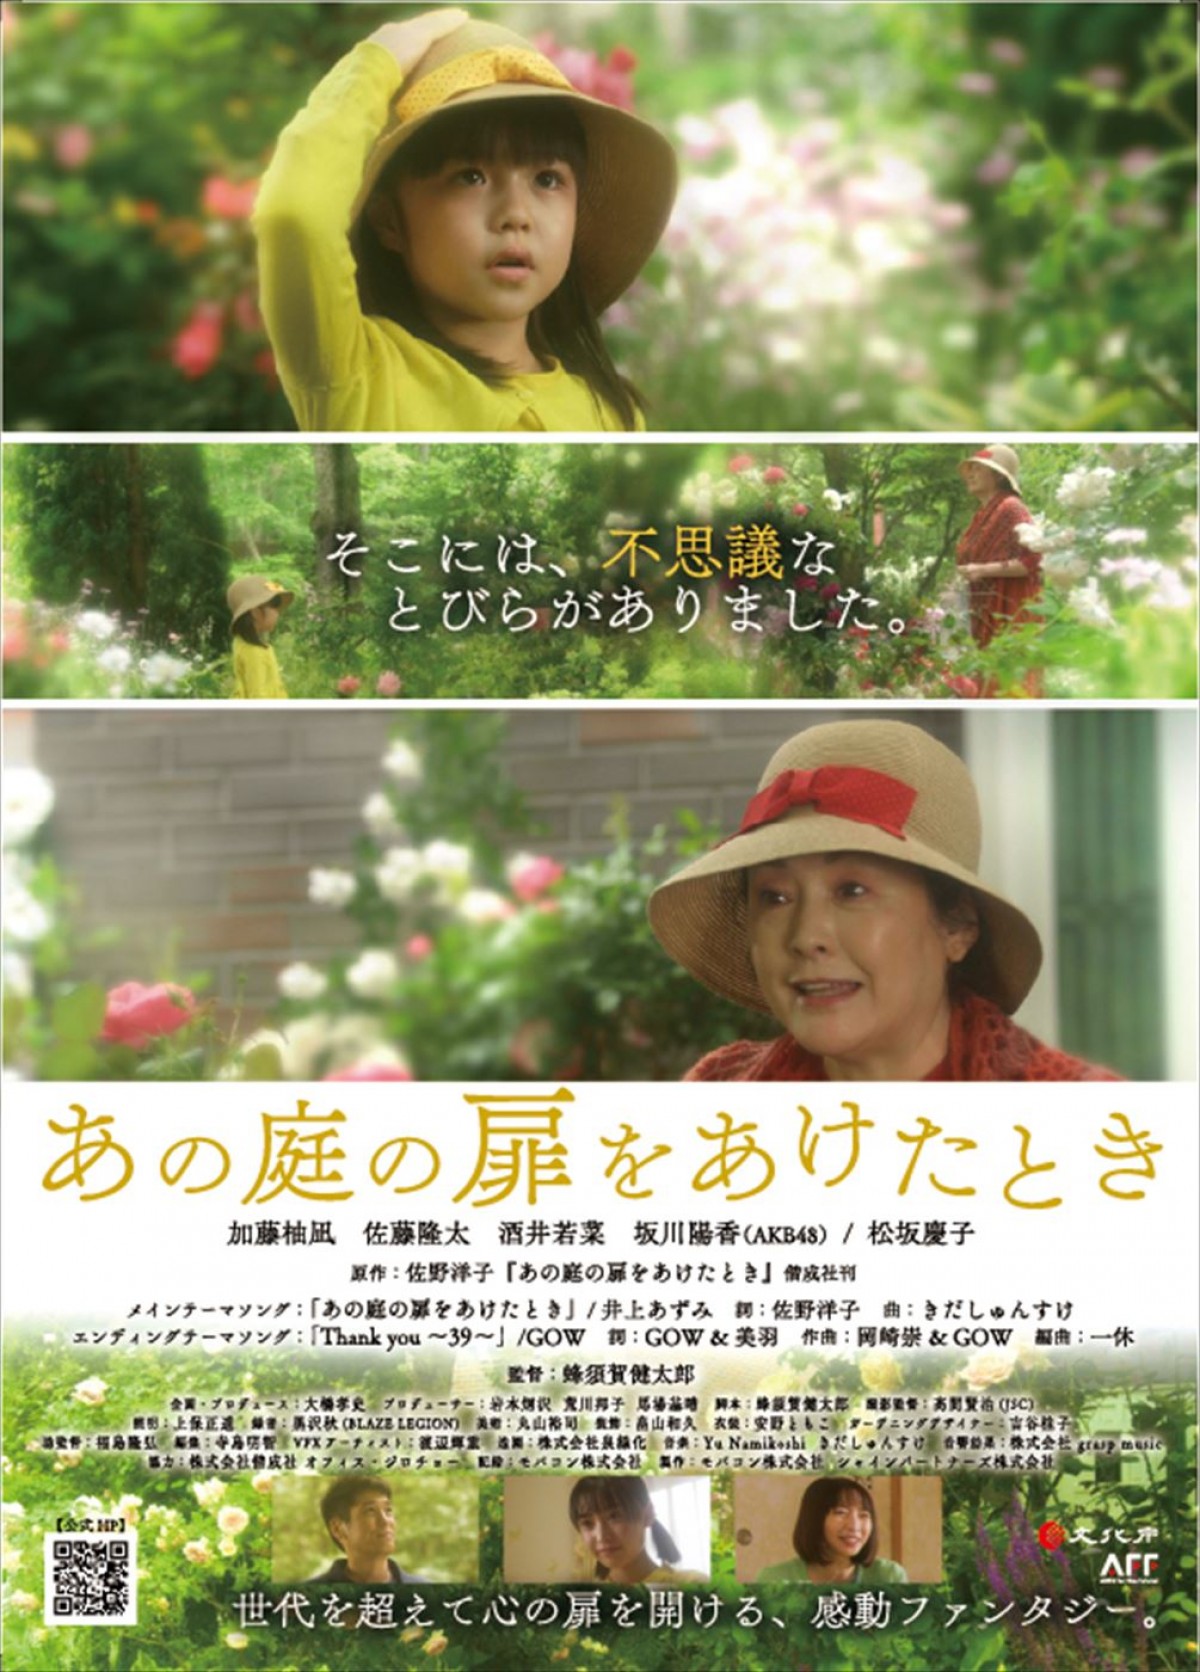 加藤柚凪×松坂慶子共演、童話原作の映画『あの庭の扉をあけたとき』予告解禁